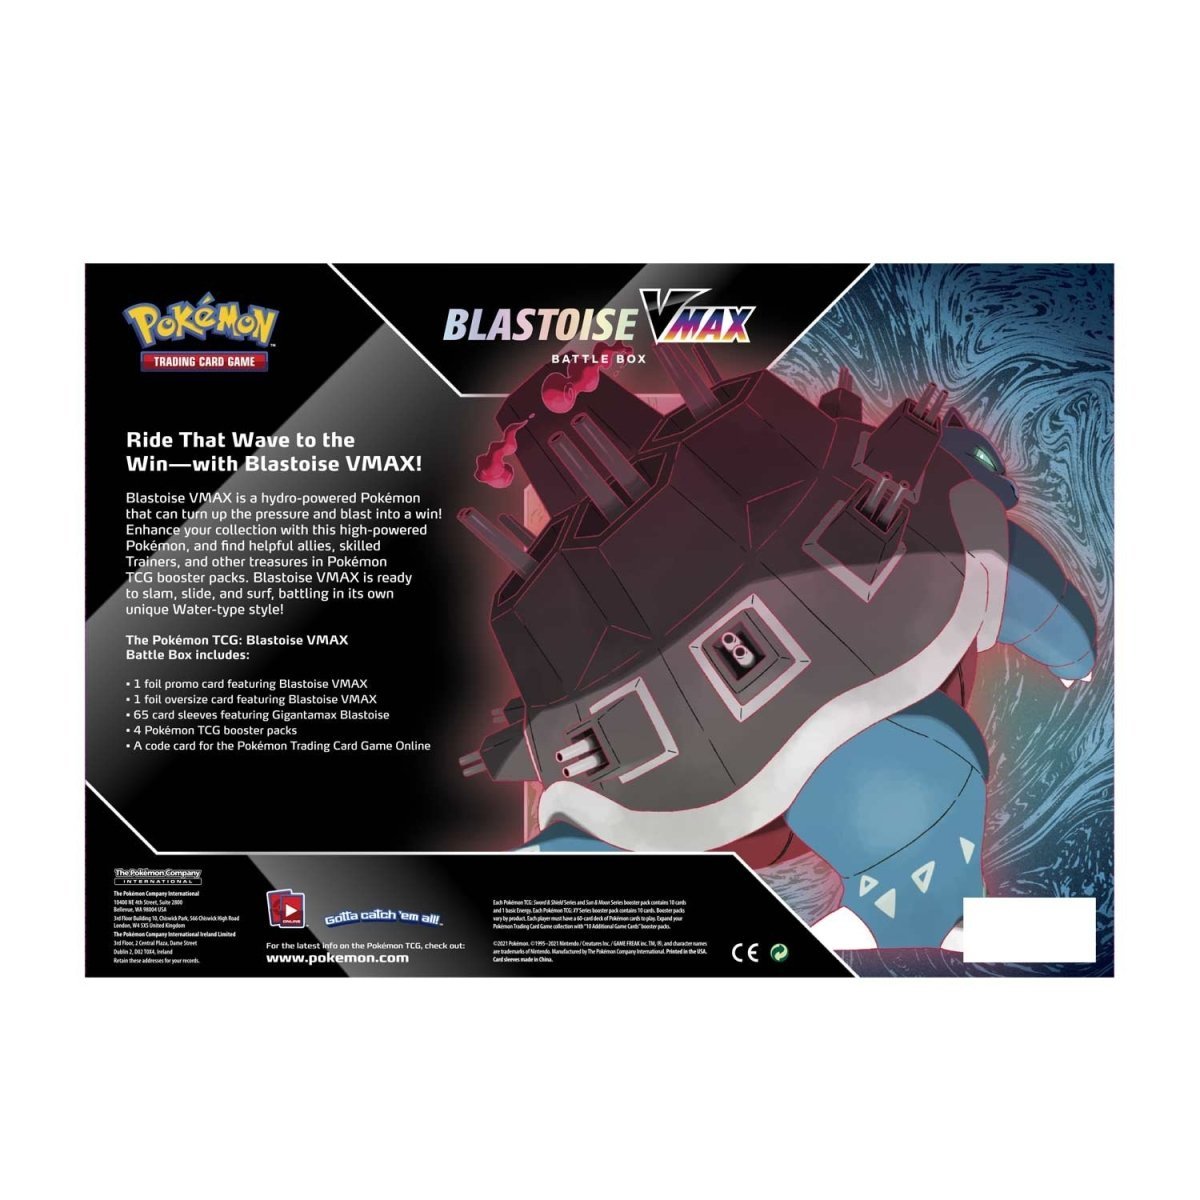 Pokémon TCG: Blastoise VMAX Battle Box - PokeRvmCollection Box